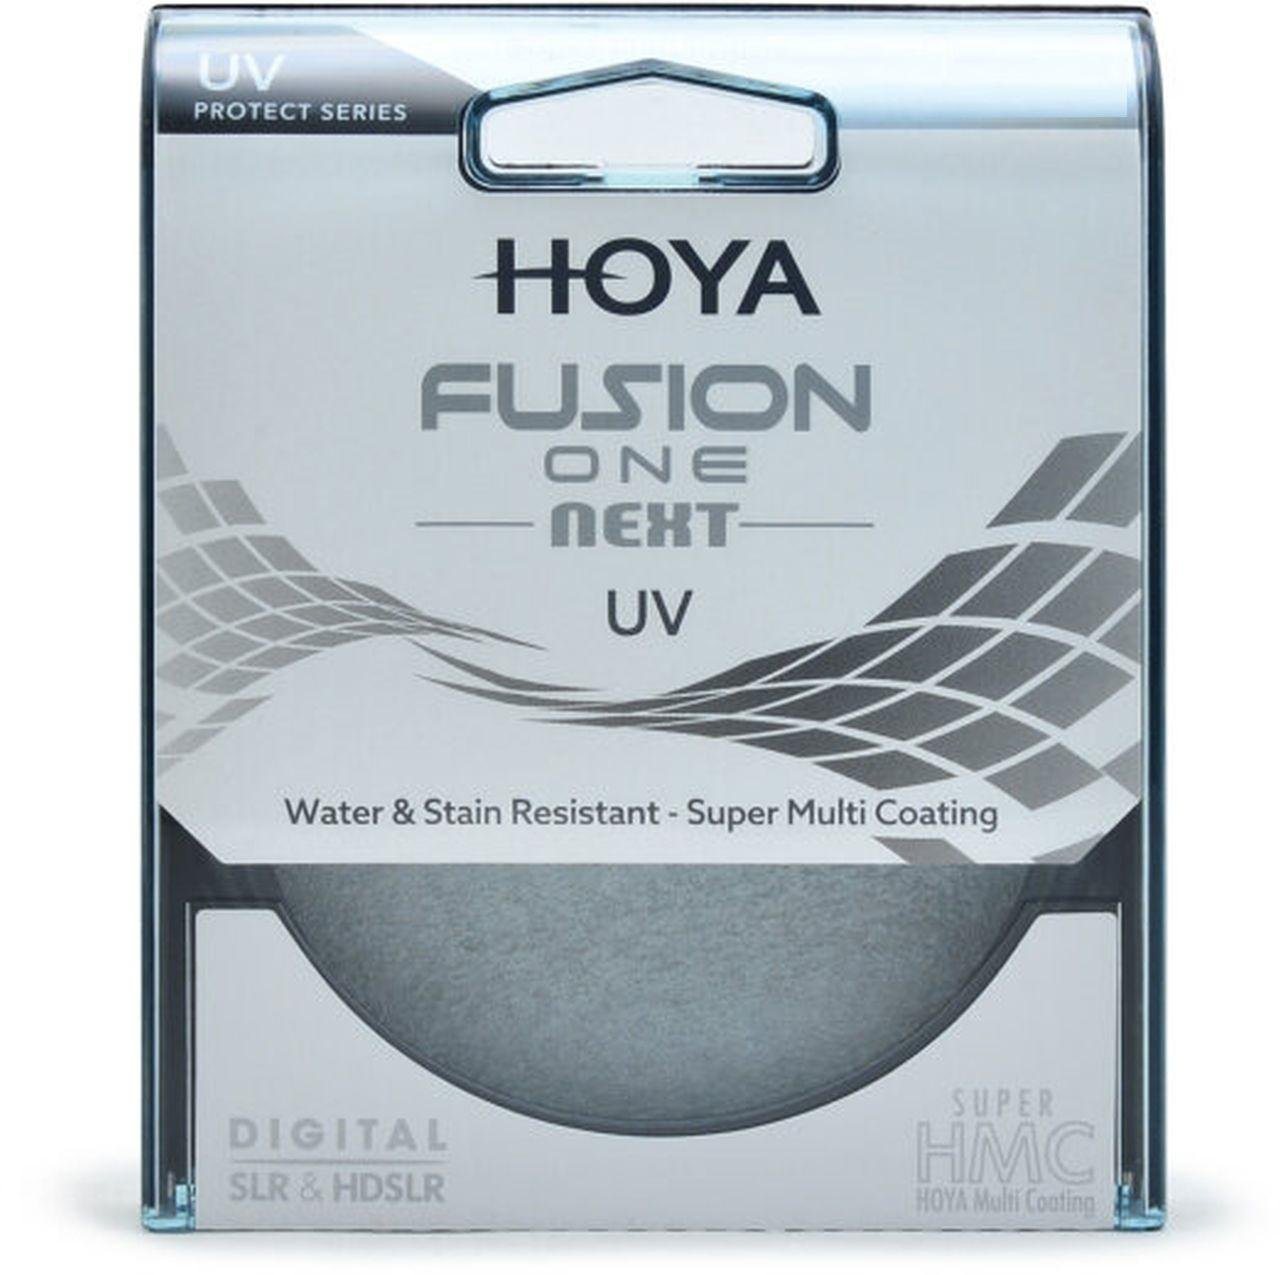 Hoya Fusion ONE Next UV-Filter 46mm Objektivzubehör von Hoya